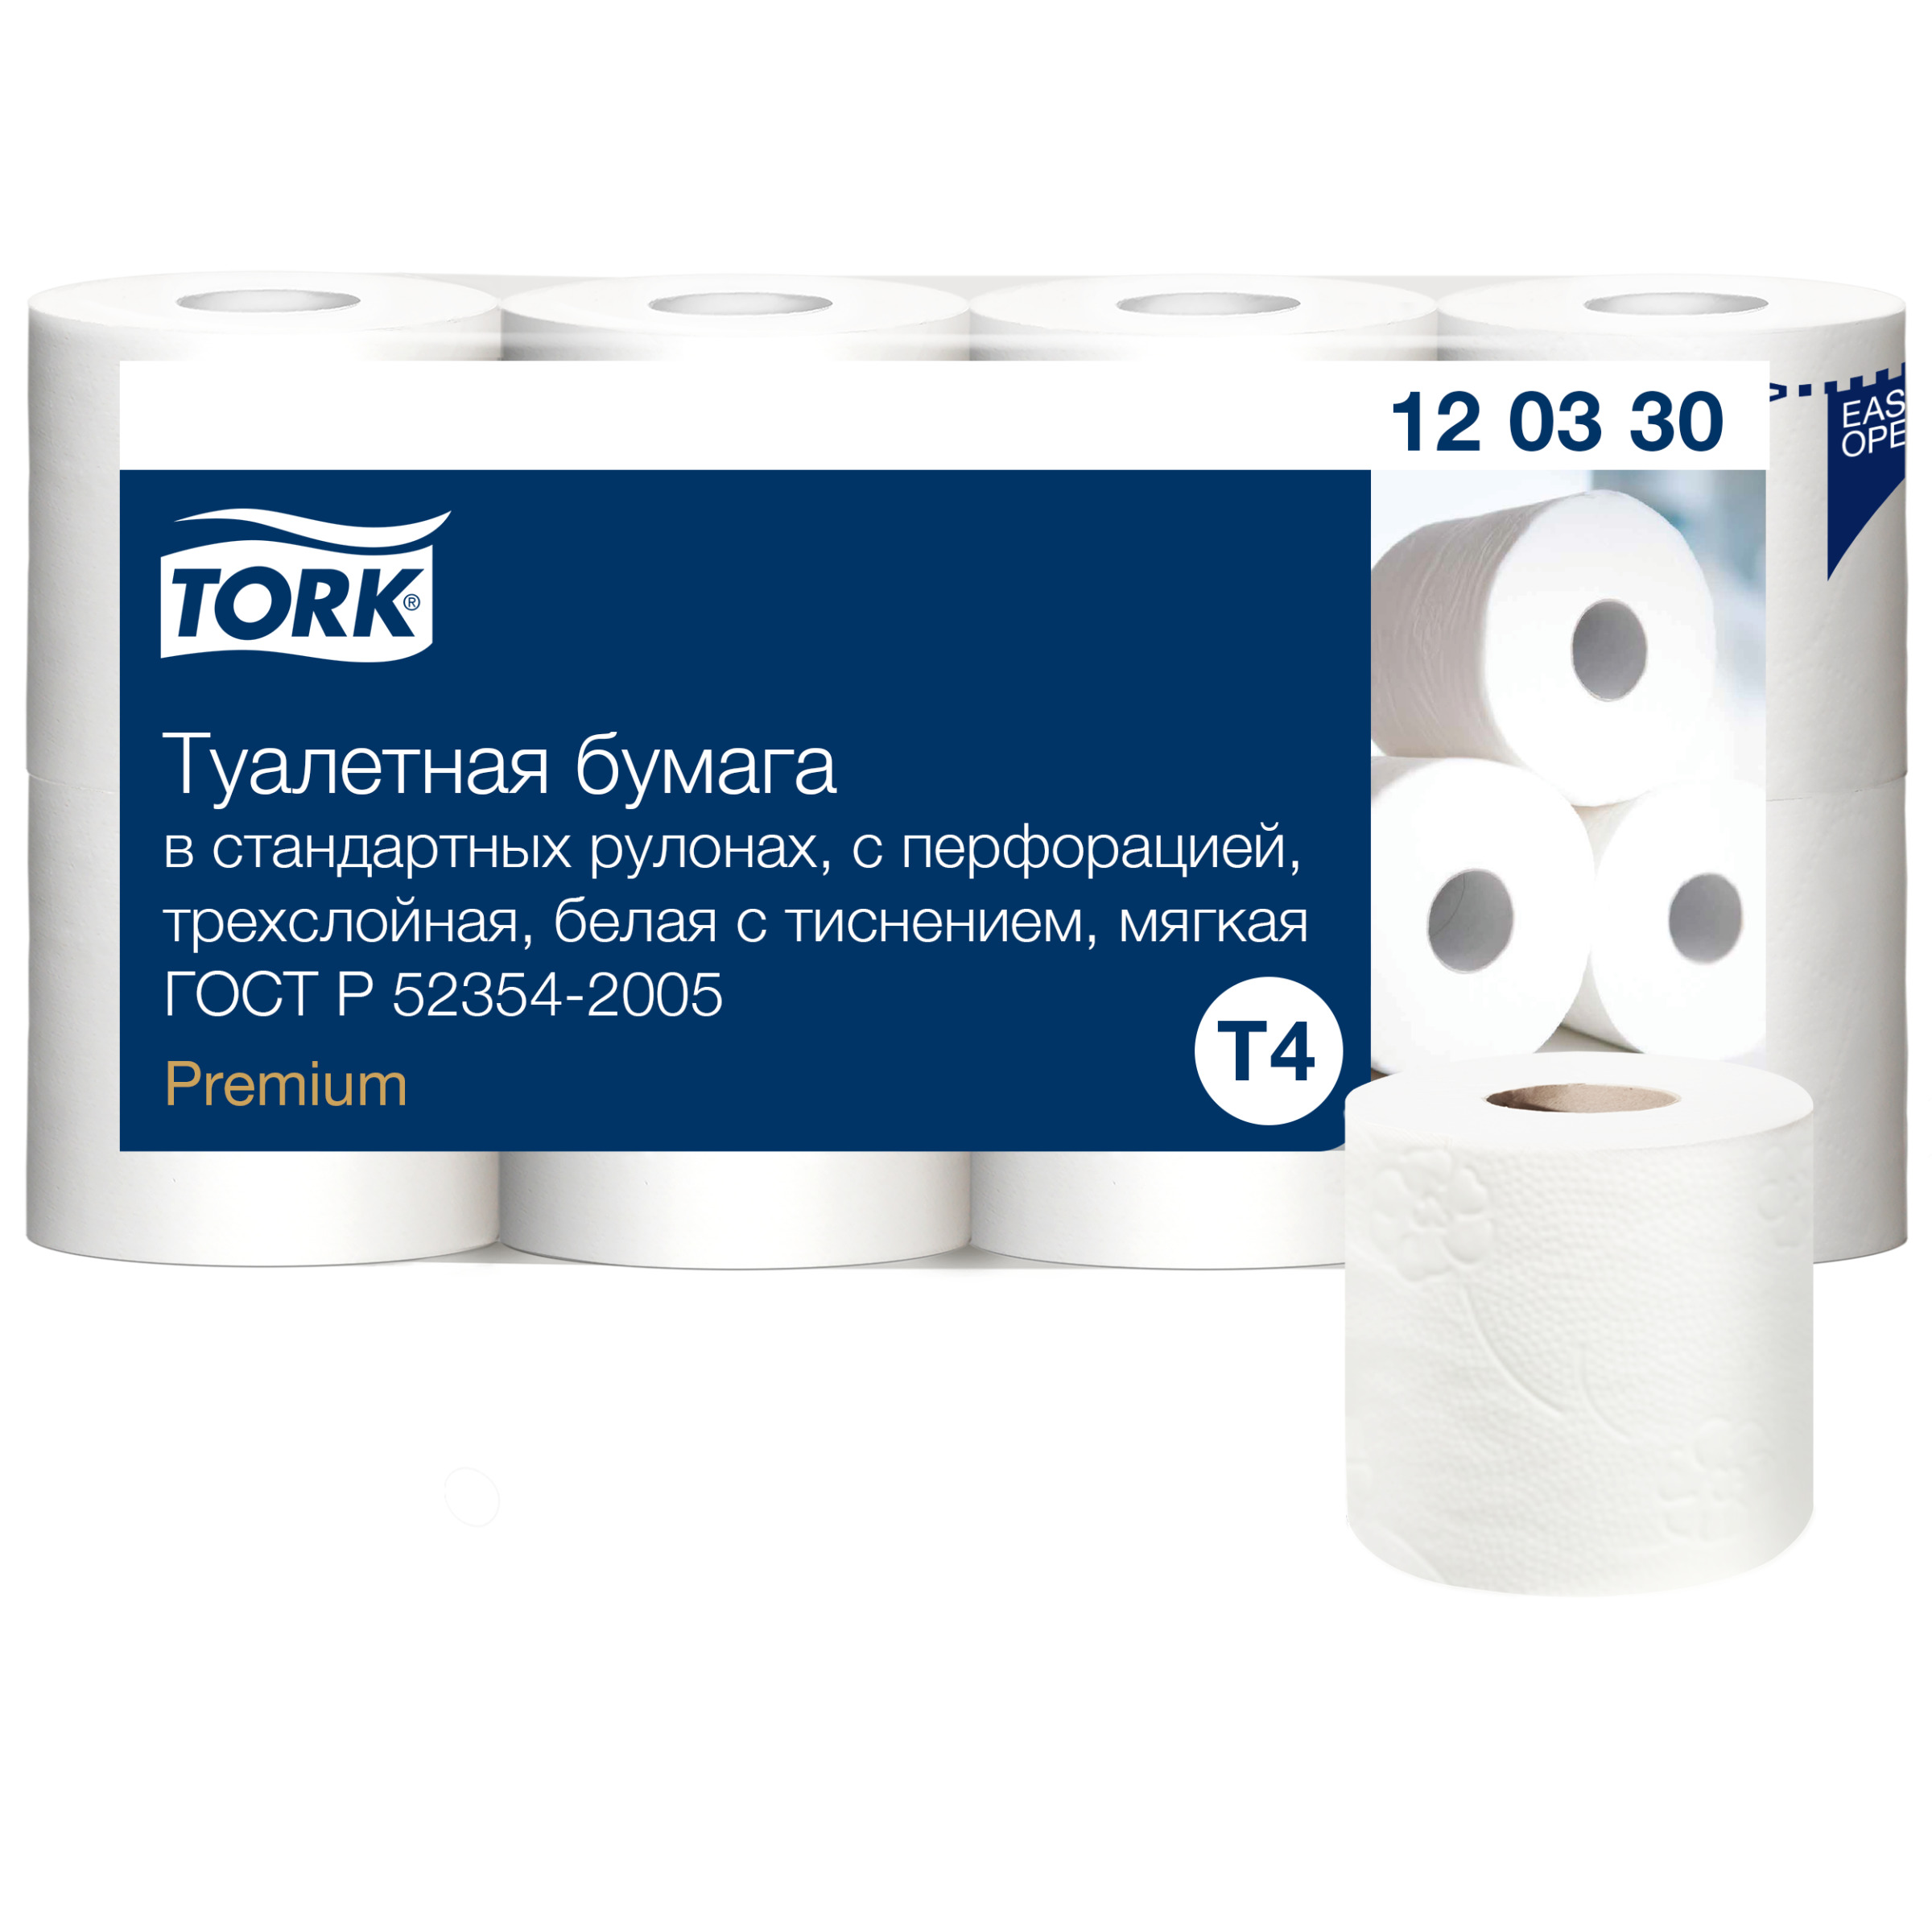 Туалетная бумага Tork в стандартных рулонах, T4, 3 слоя, 8 рул., 12 уп туалетная бумага в мини рулонах tork advanced smartone